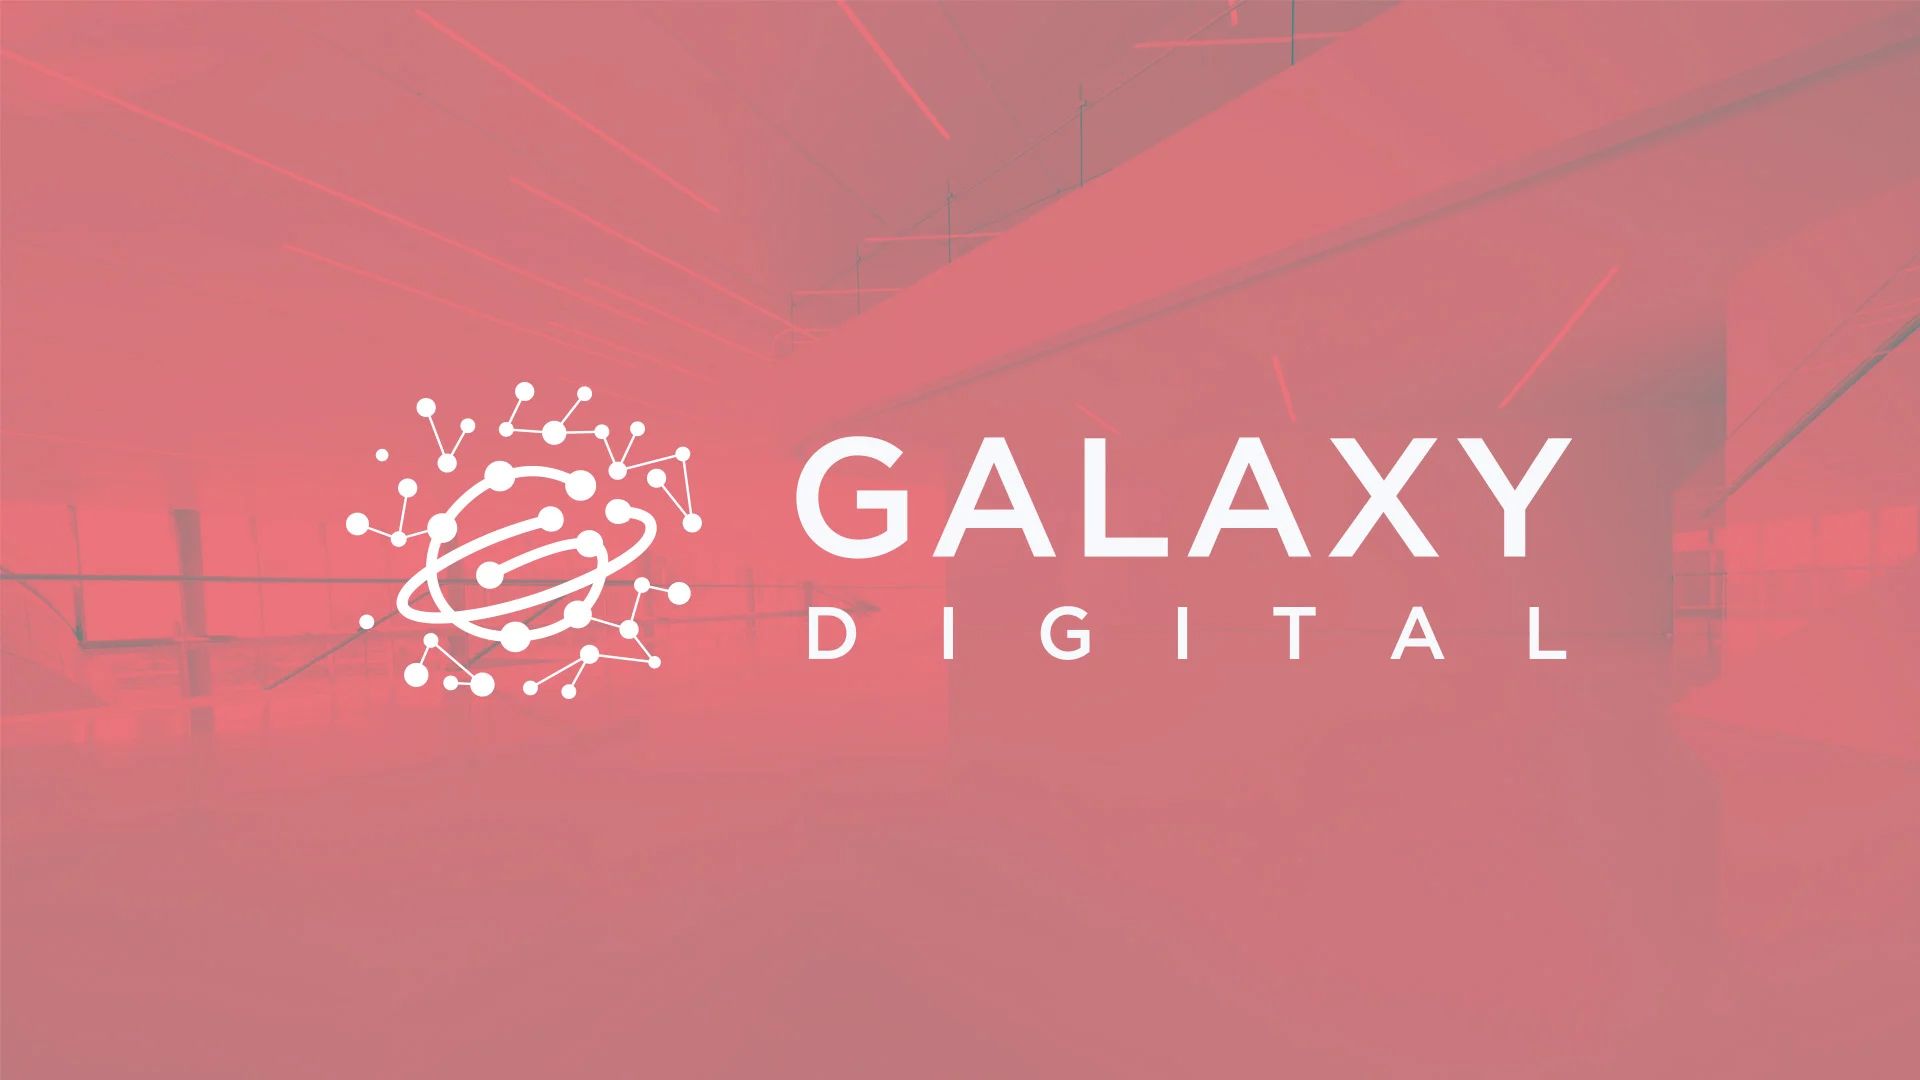  etf galaxy digital global    